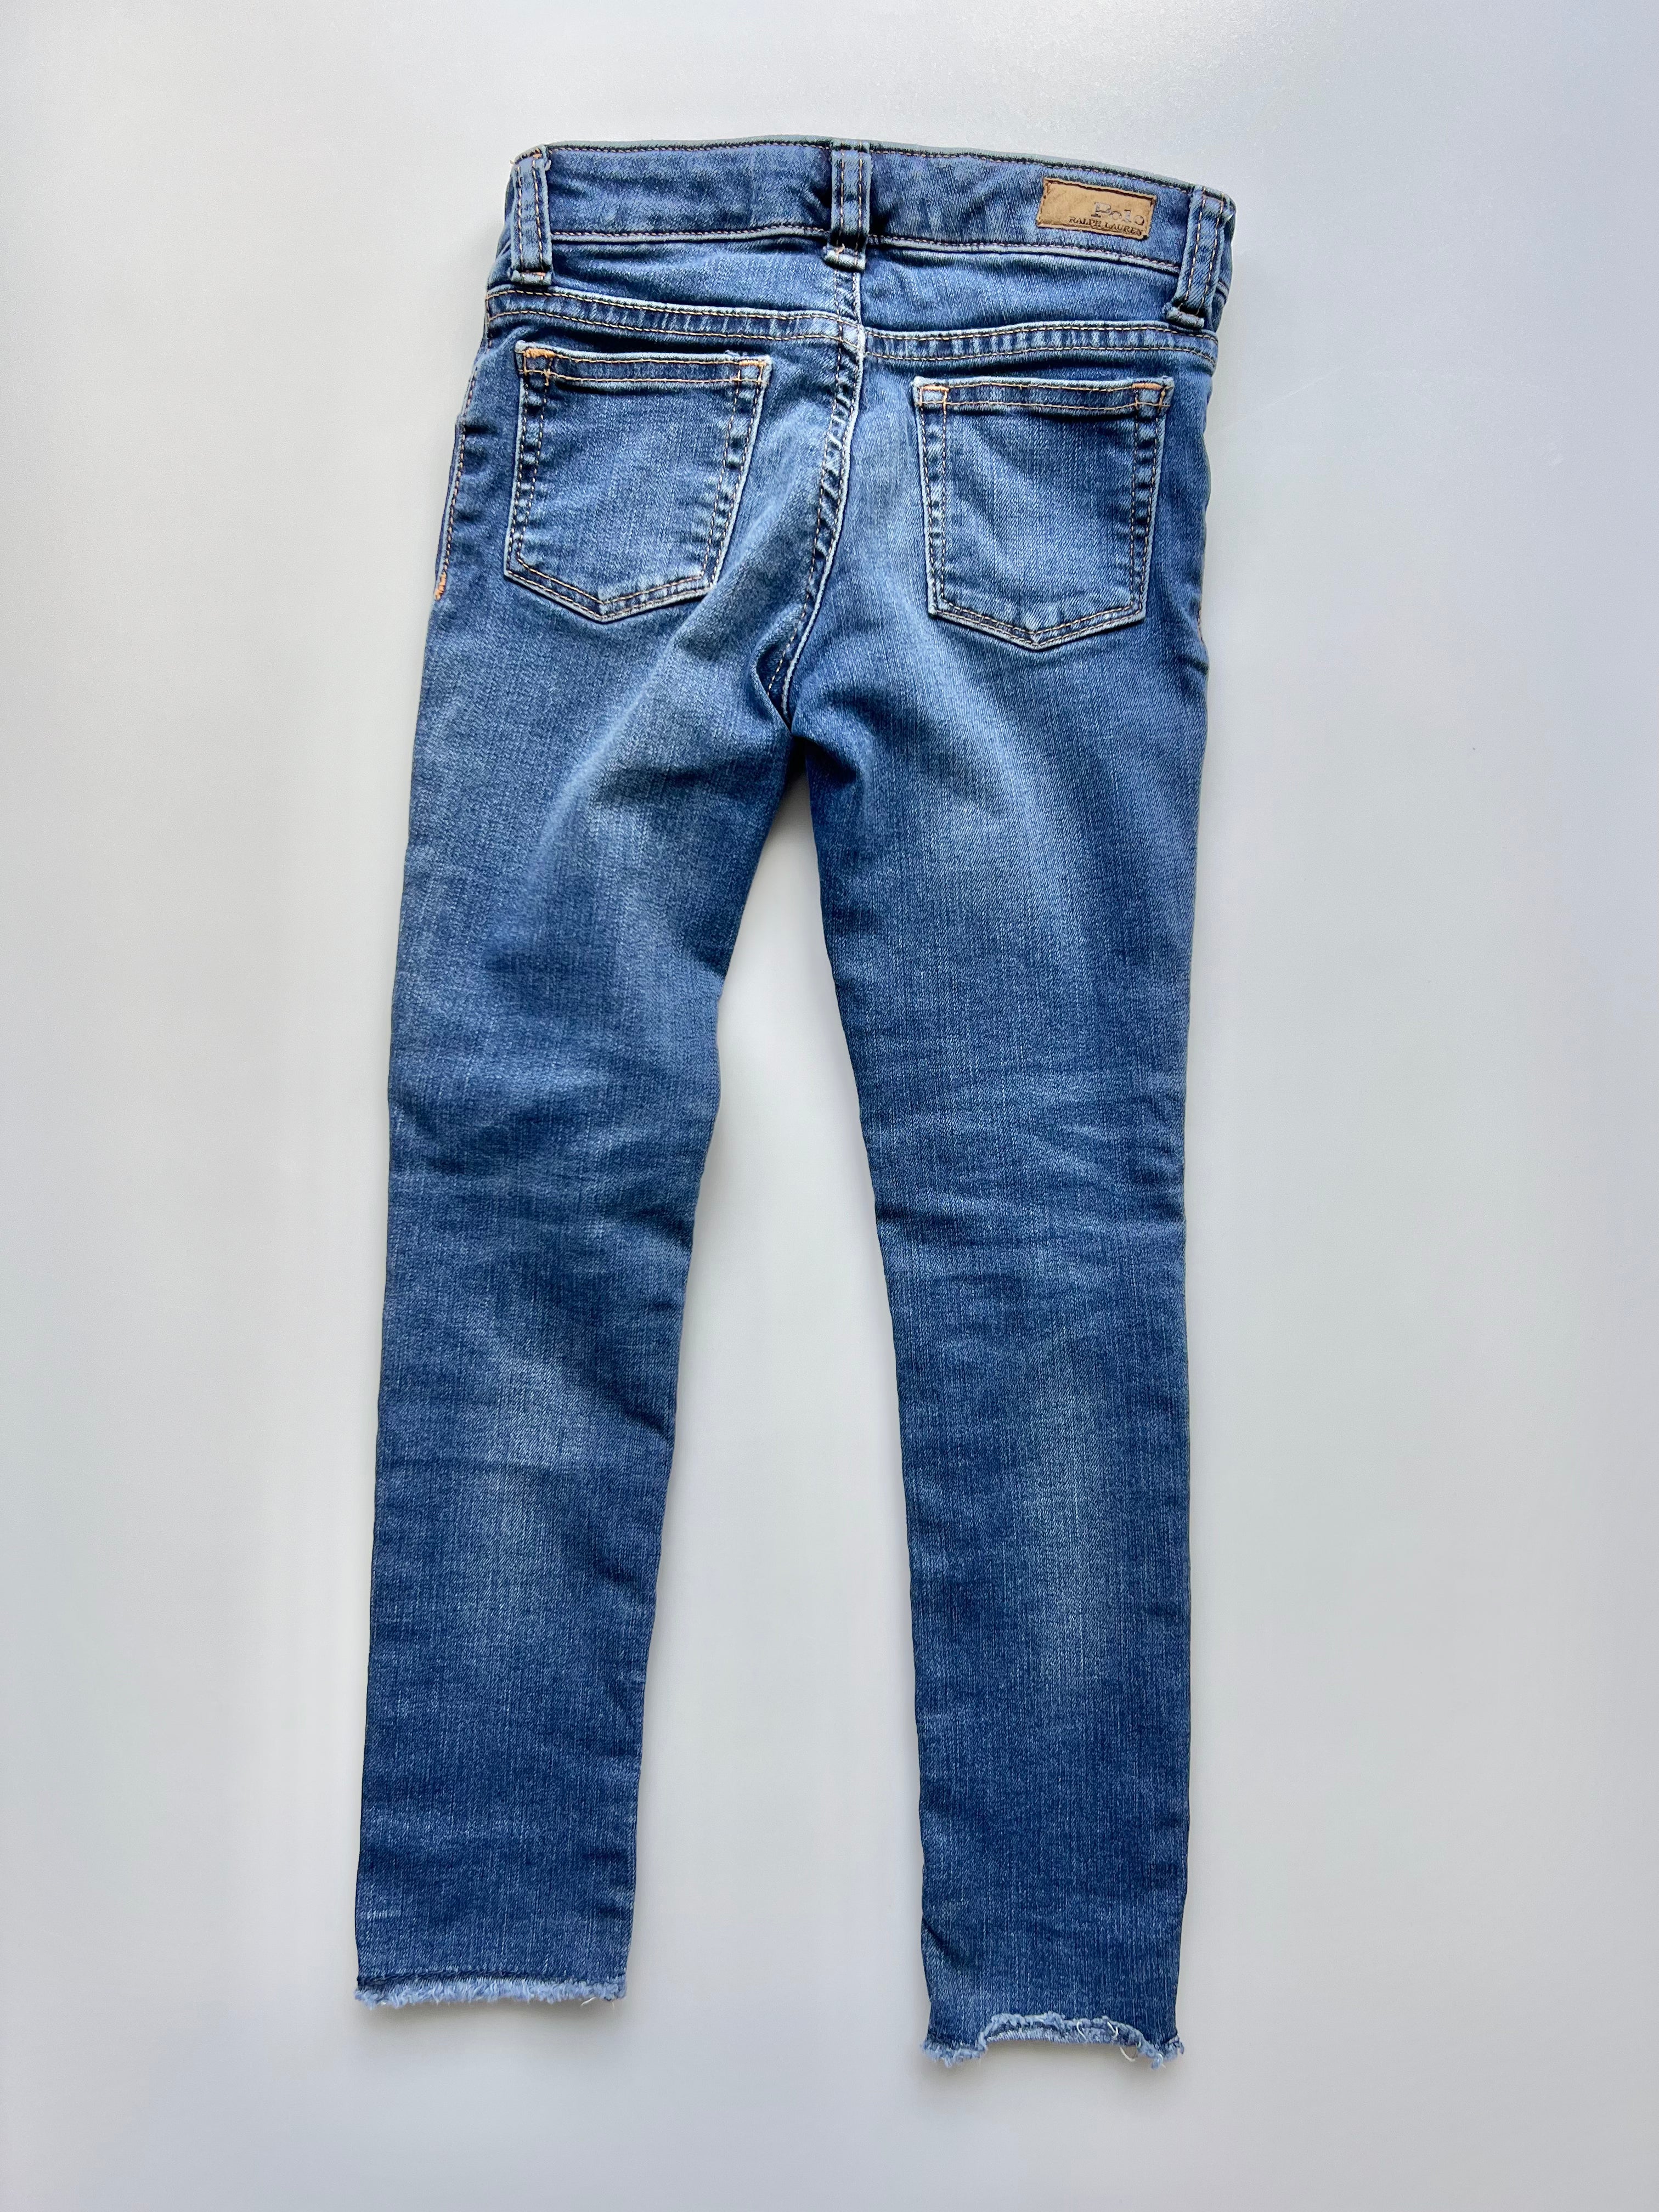 Polo Ralph Lauren Jeans Age 6